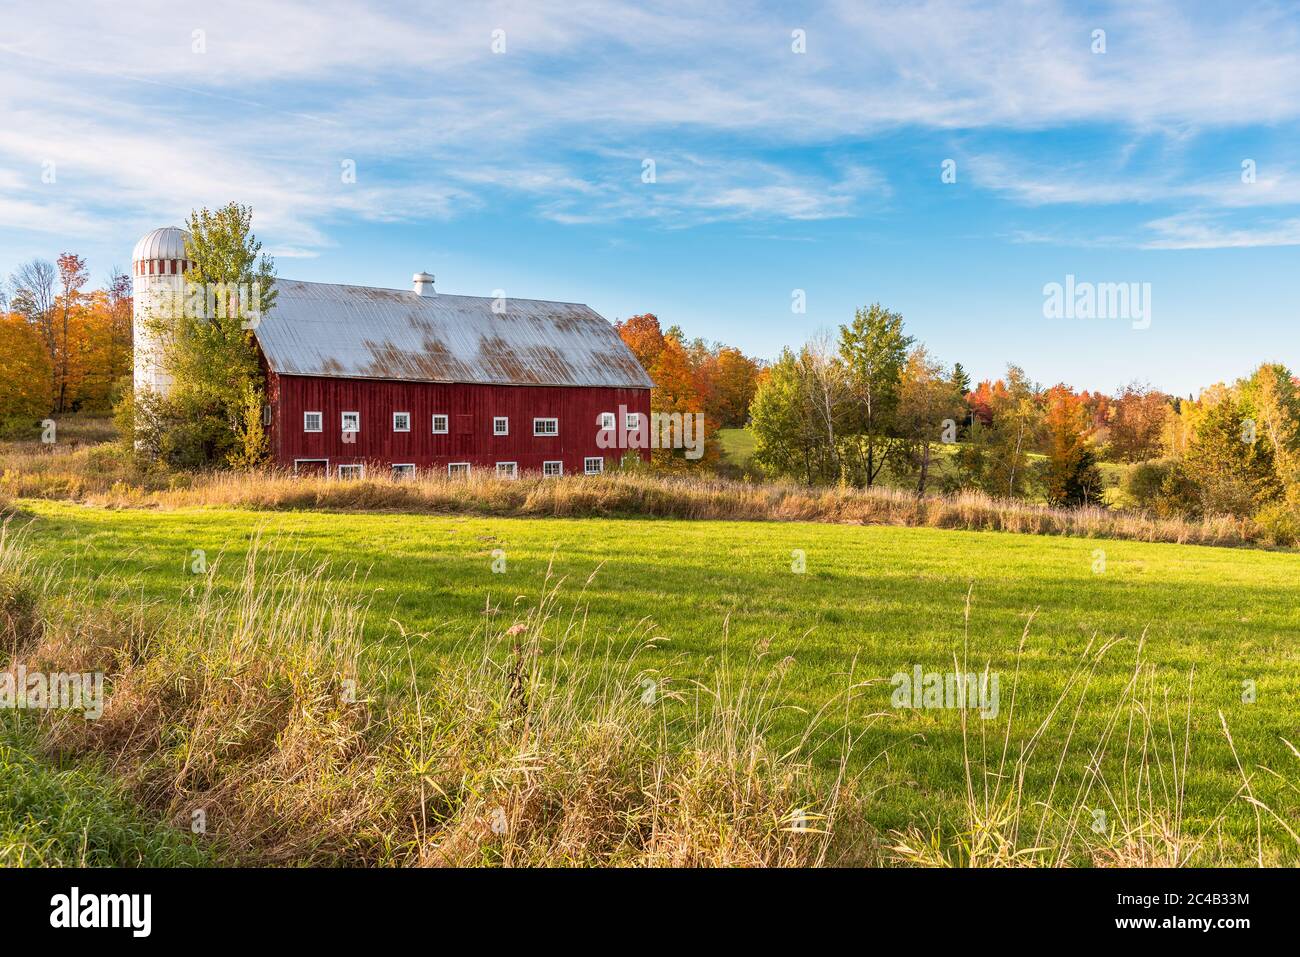 Idyllische ländliche Landschaft unter blauem Himmel mit einer alten roten Holzscheune mit Silo am Ende eines Grasfeldes am sonnigen Herbsttag Stockfoto